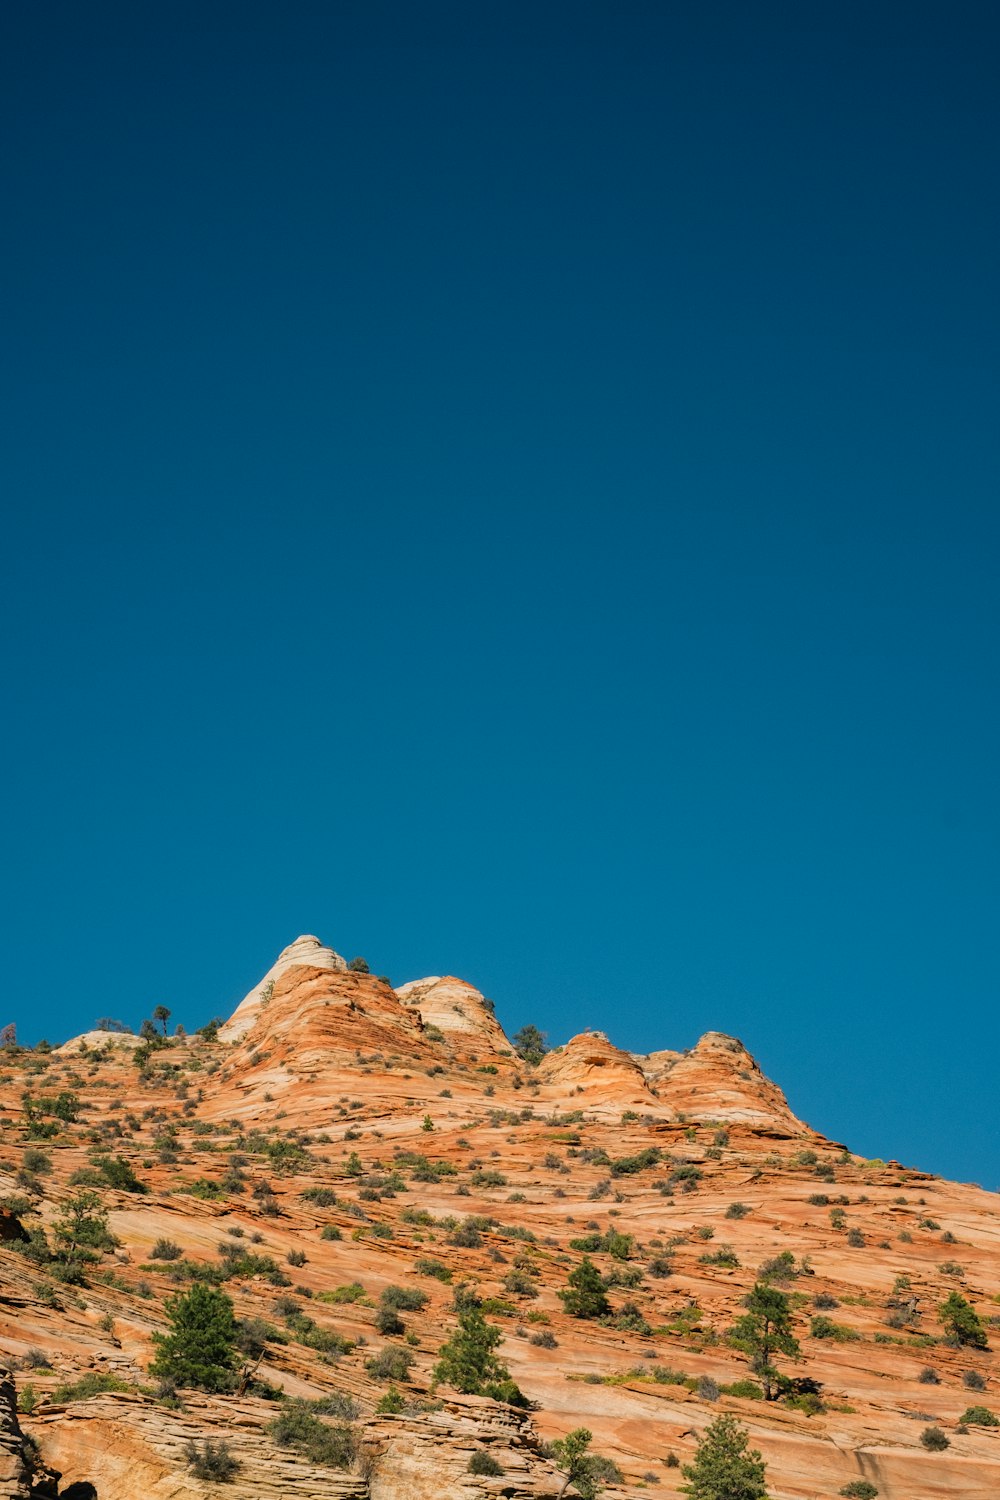 Montaña rocosa marrón bajo el cielo azul durante el día